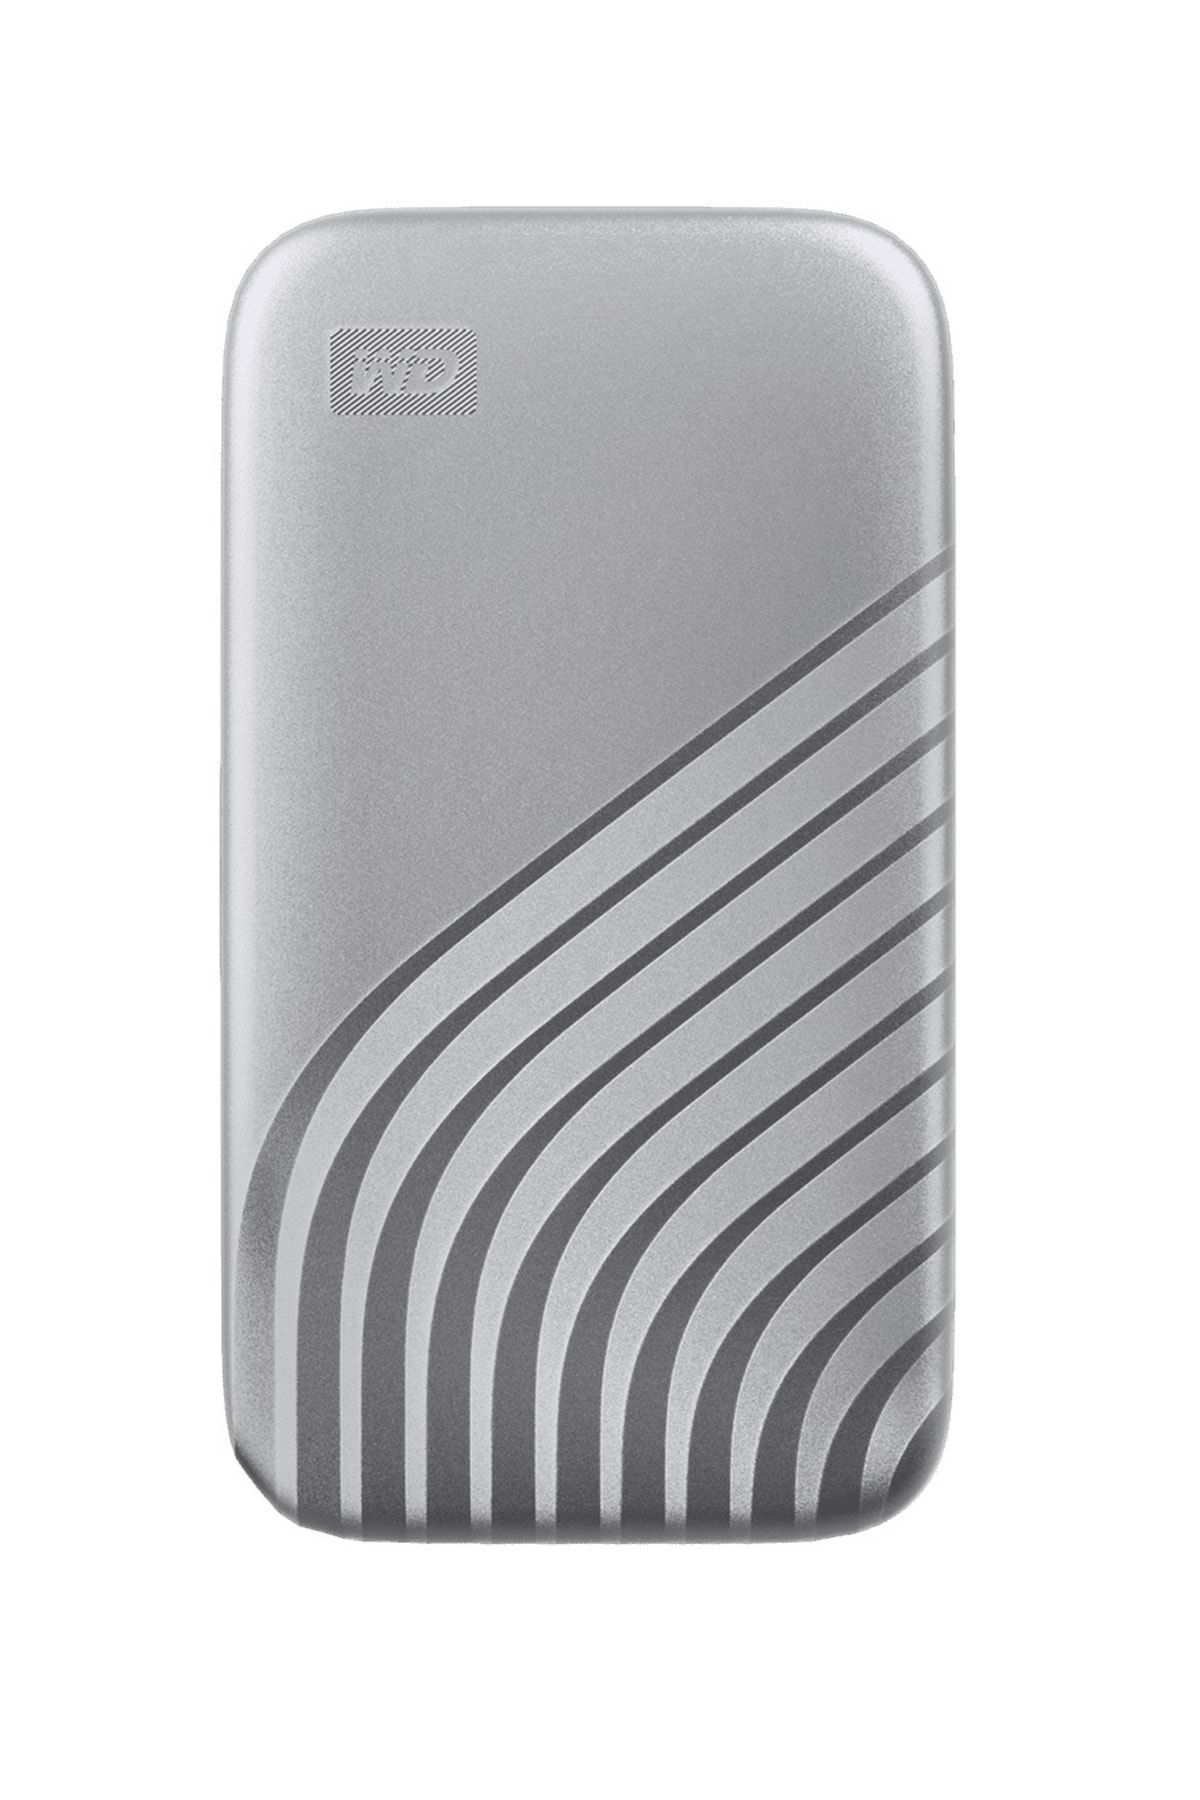 WD My Passport 2tb Bagf0020bsl-wesn 1050mb/s Usb-c Gümüş Taşınabilir Ssd Disk